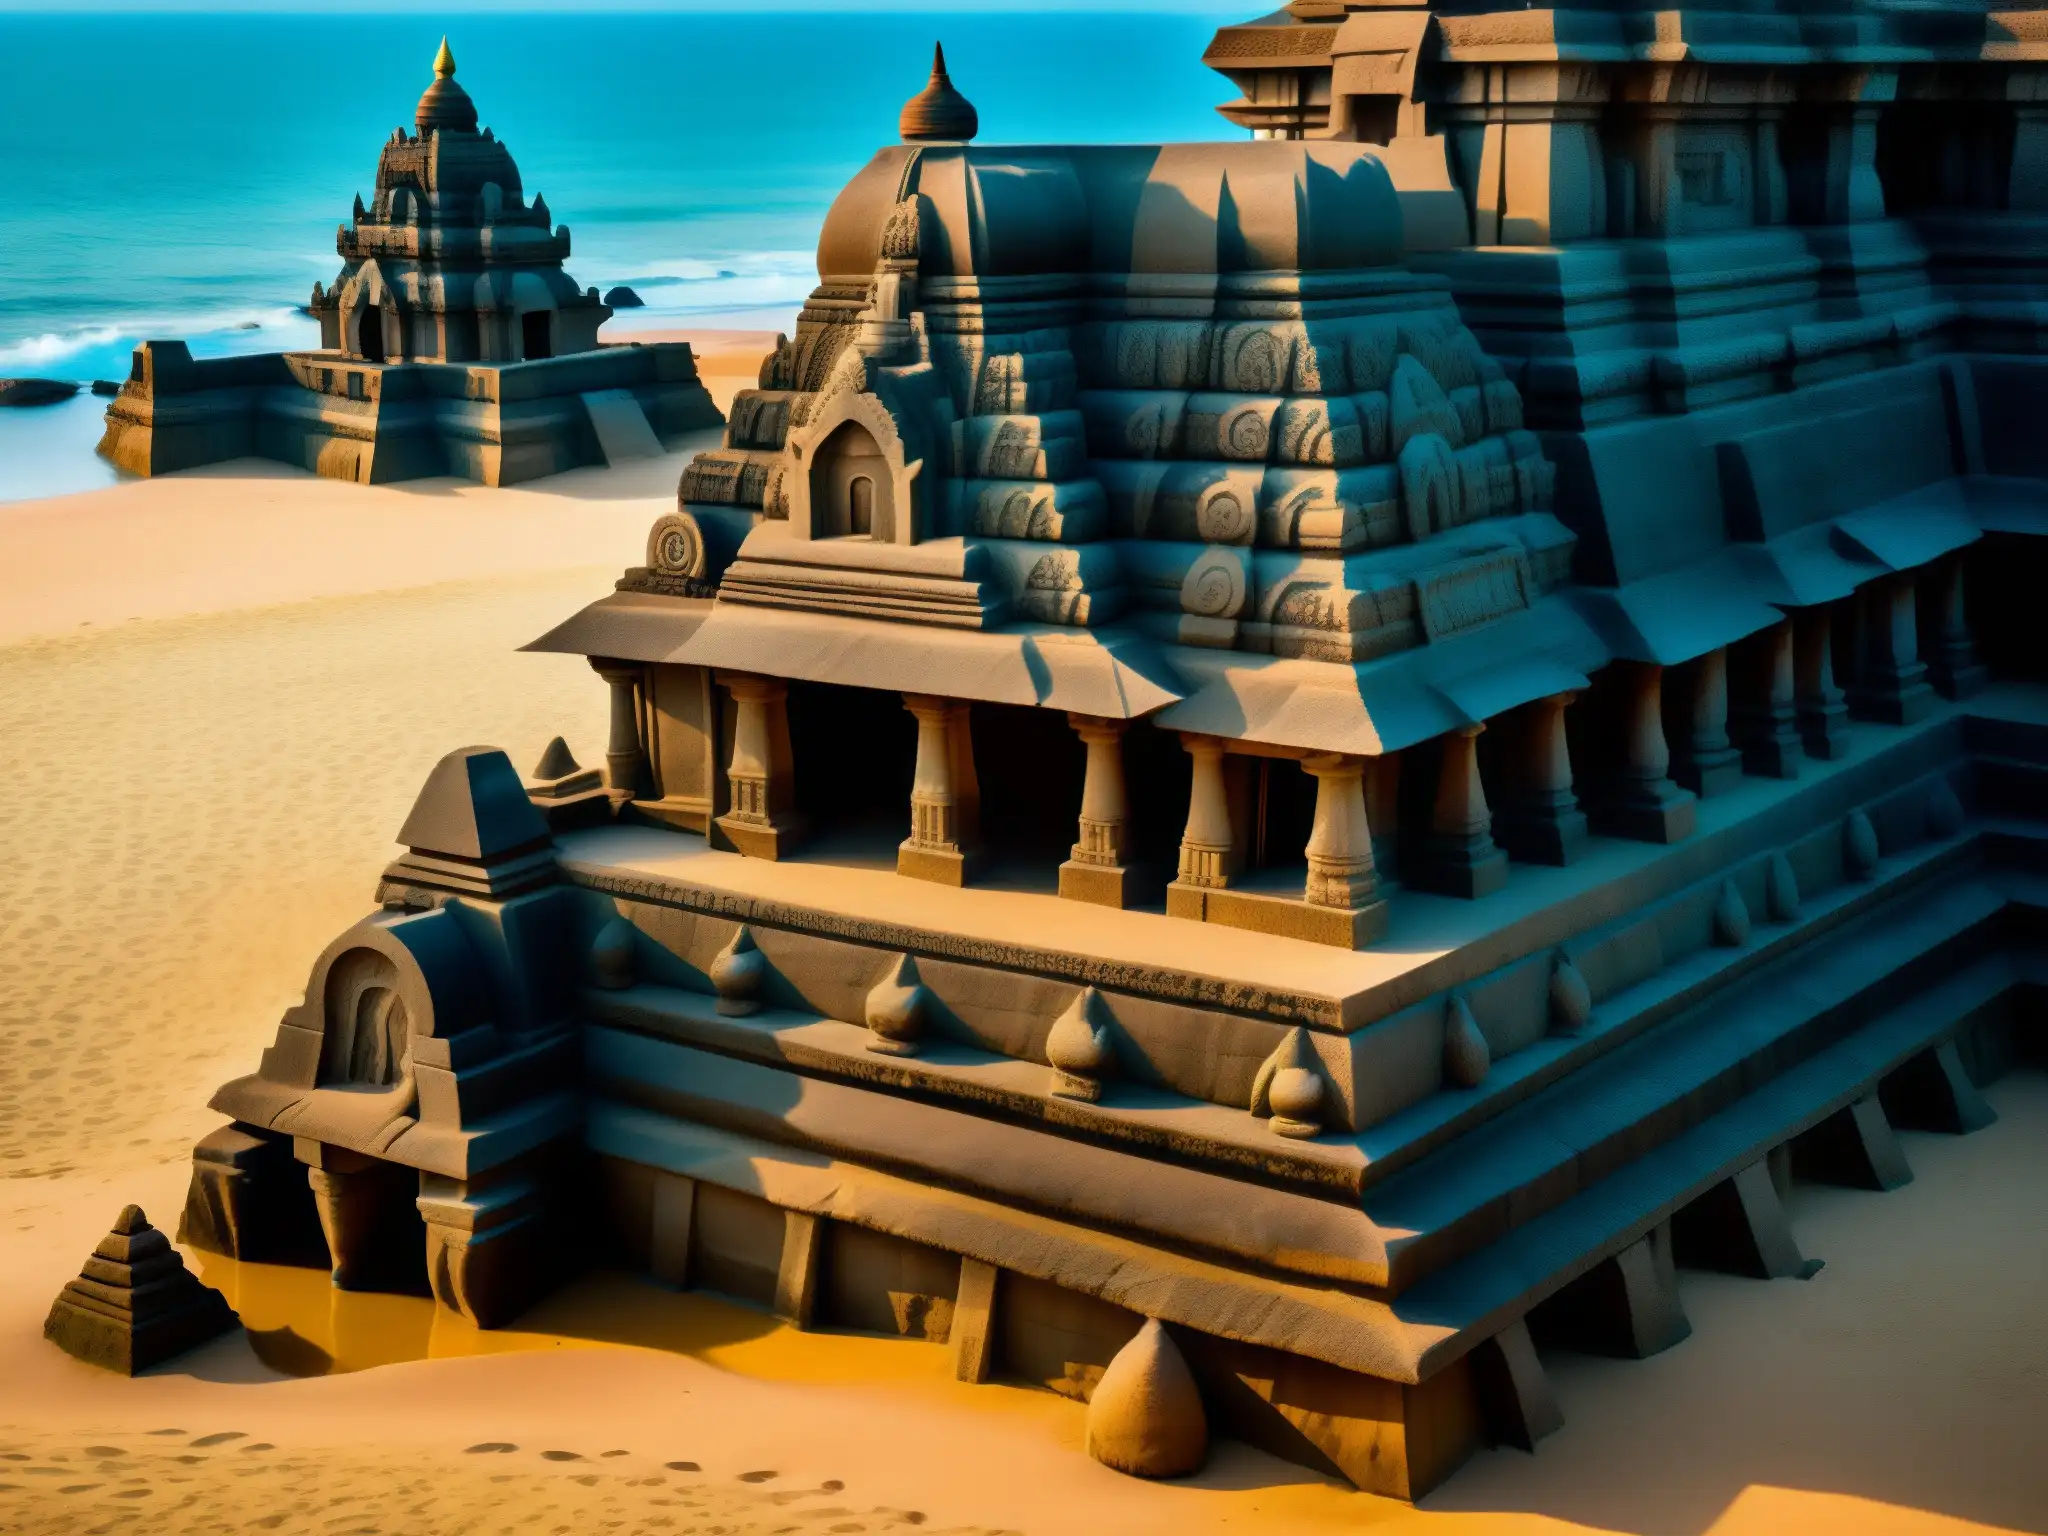 Imagen detallada de los templos hundidos de Mahabalipuram, evocando misterio y grandiosidad de la civilización perdida